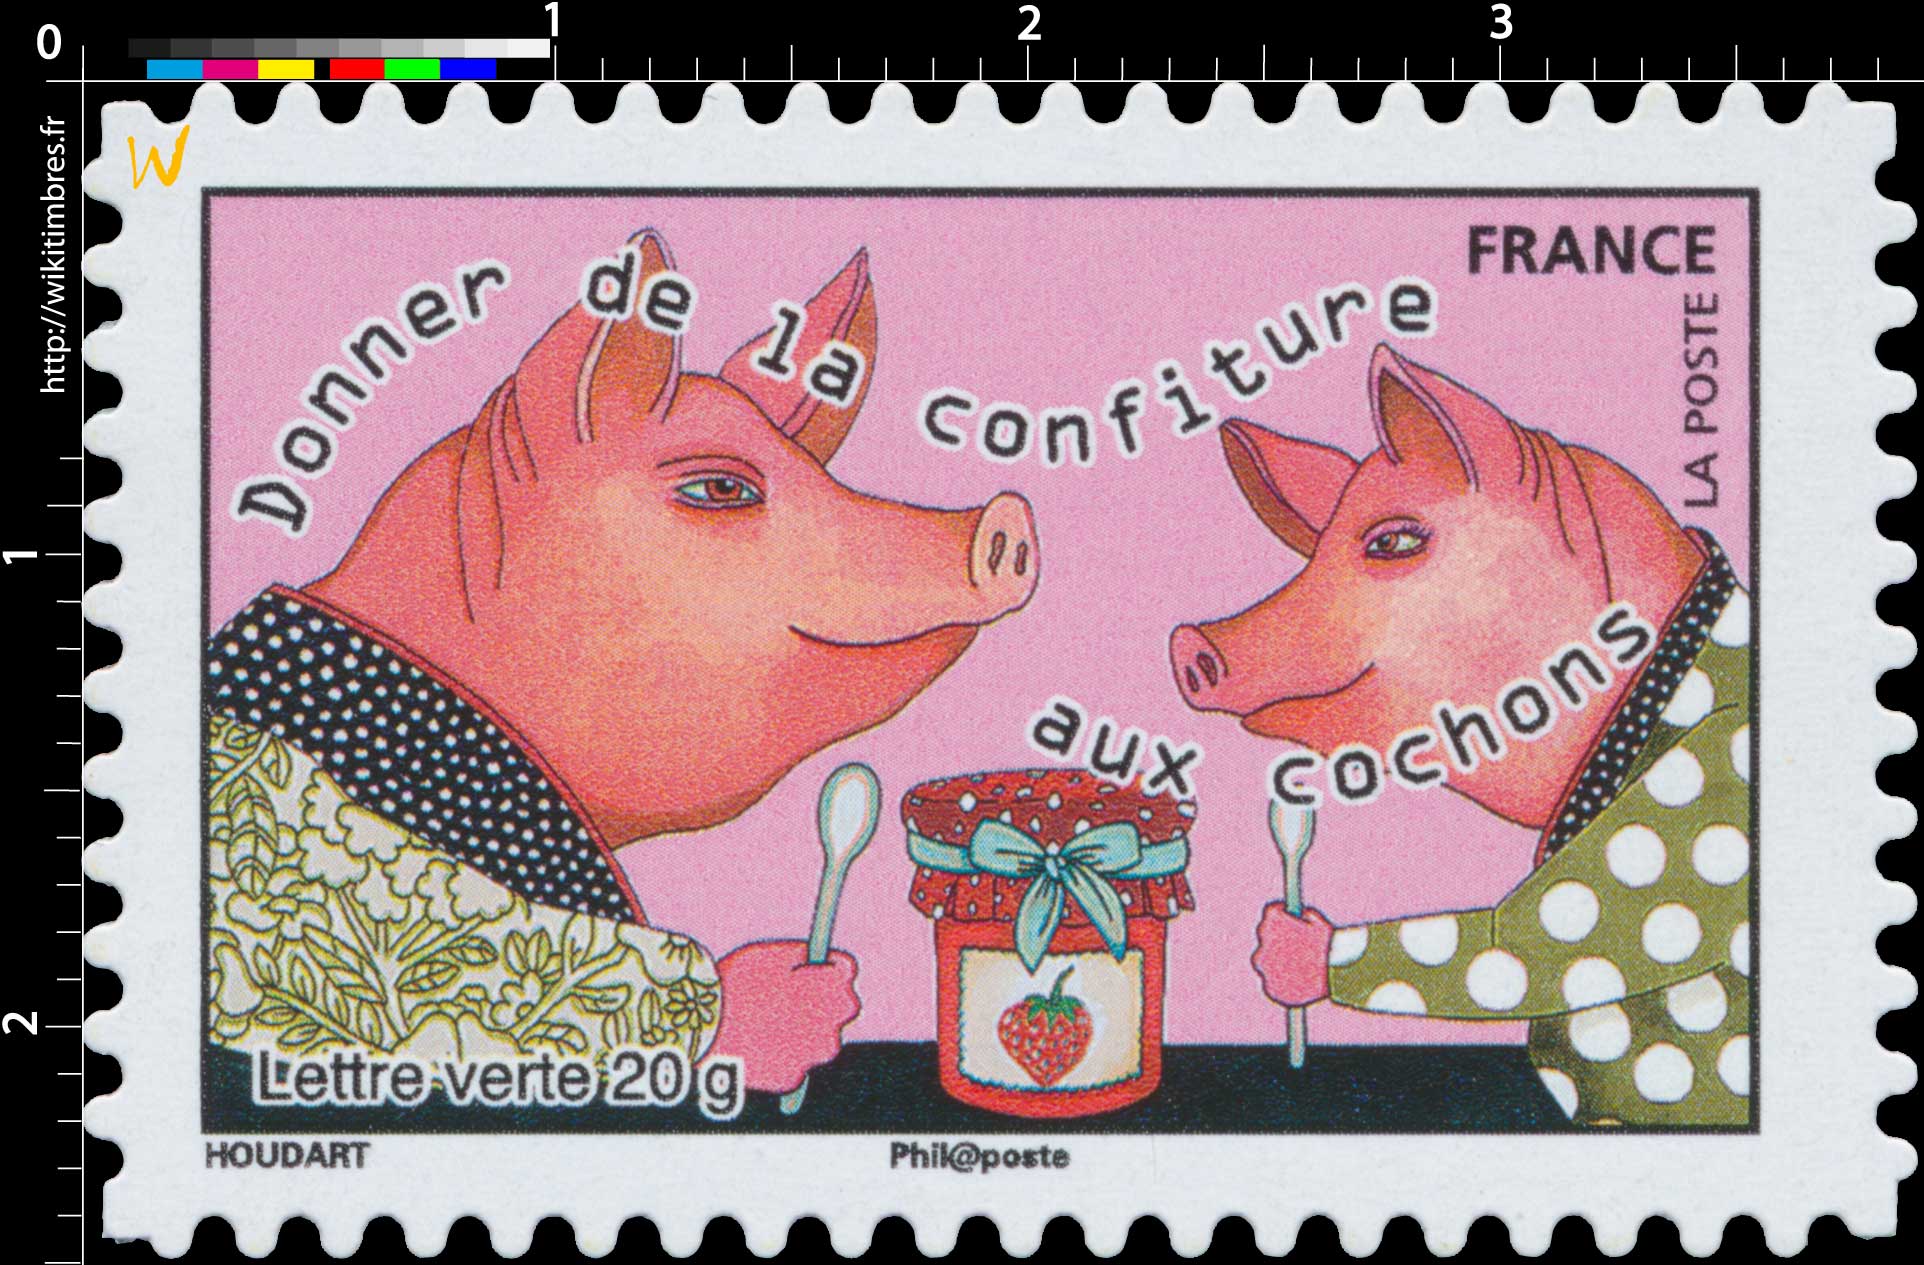 2015 Donner de la confiture aux cochons